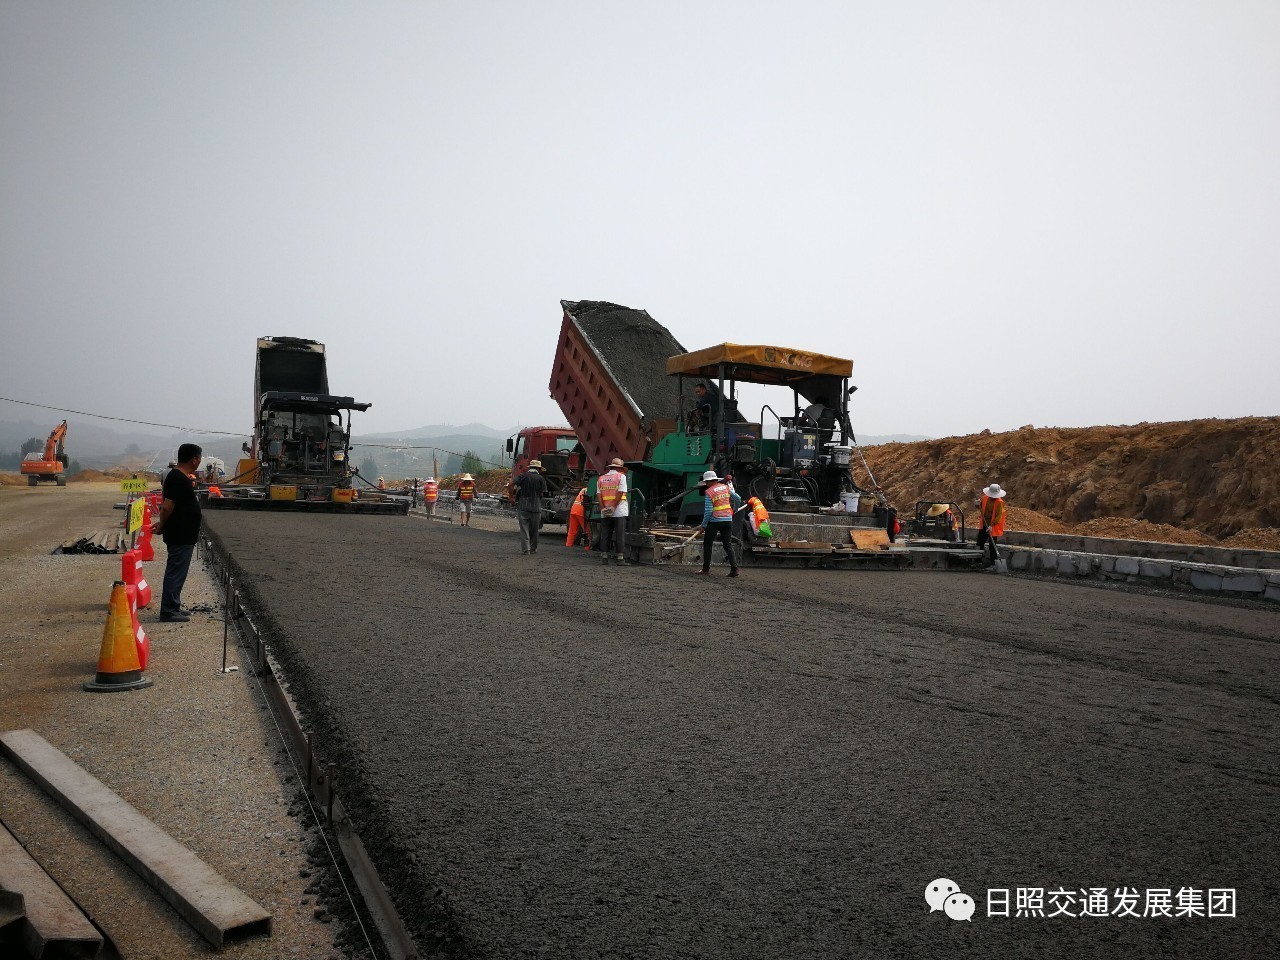 S222日照潍坊界至西湖段改建工程:东港段水稳